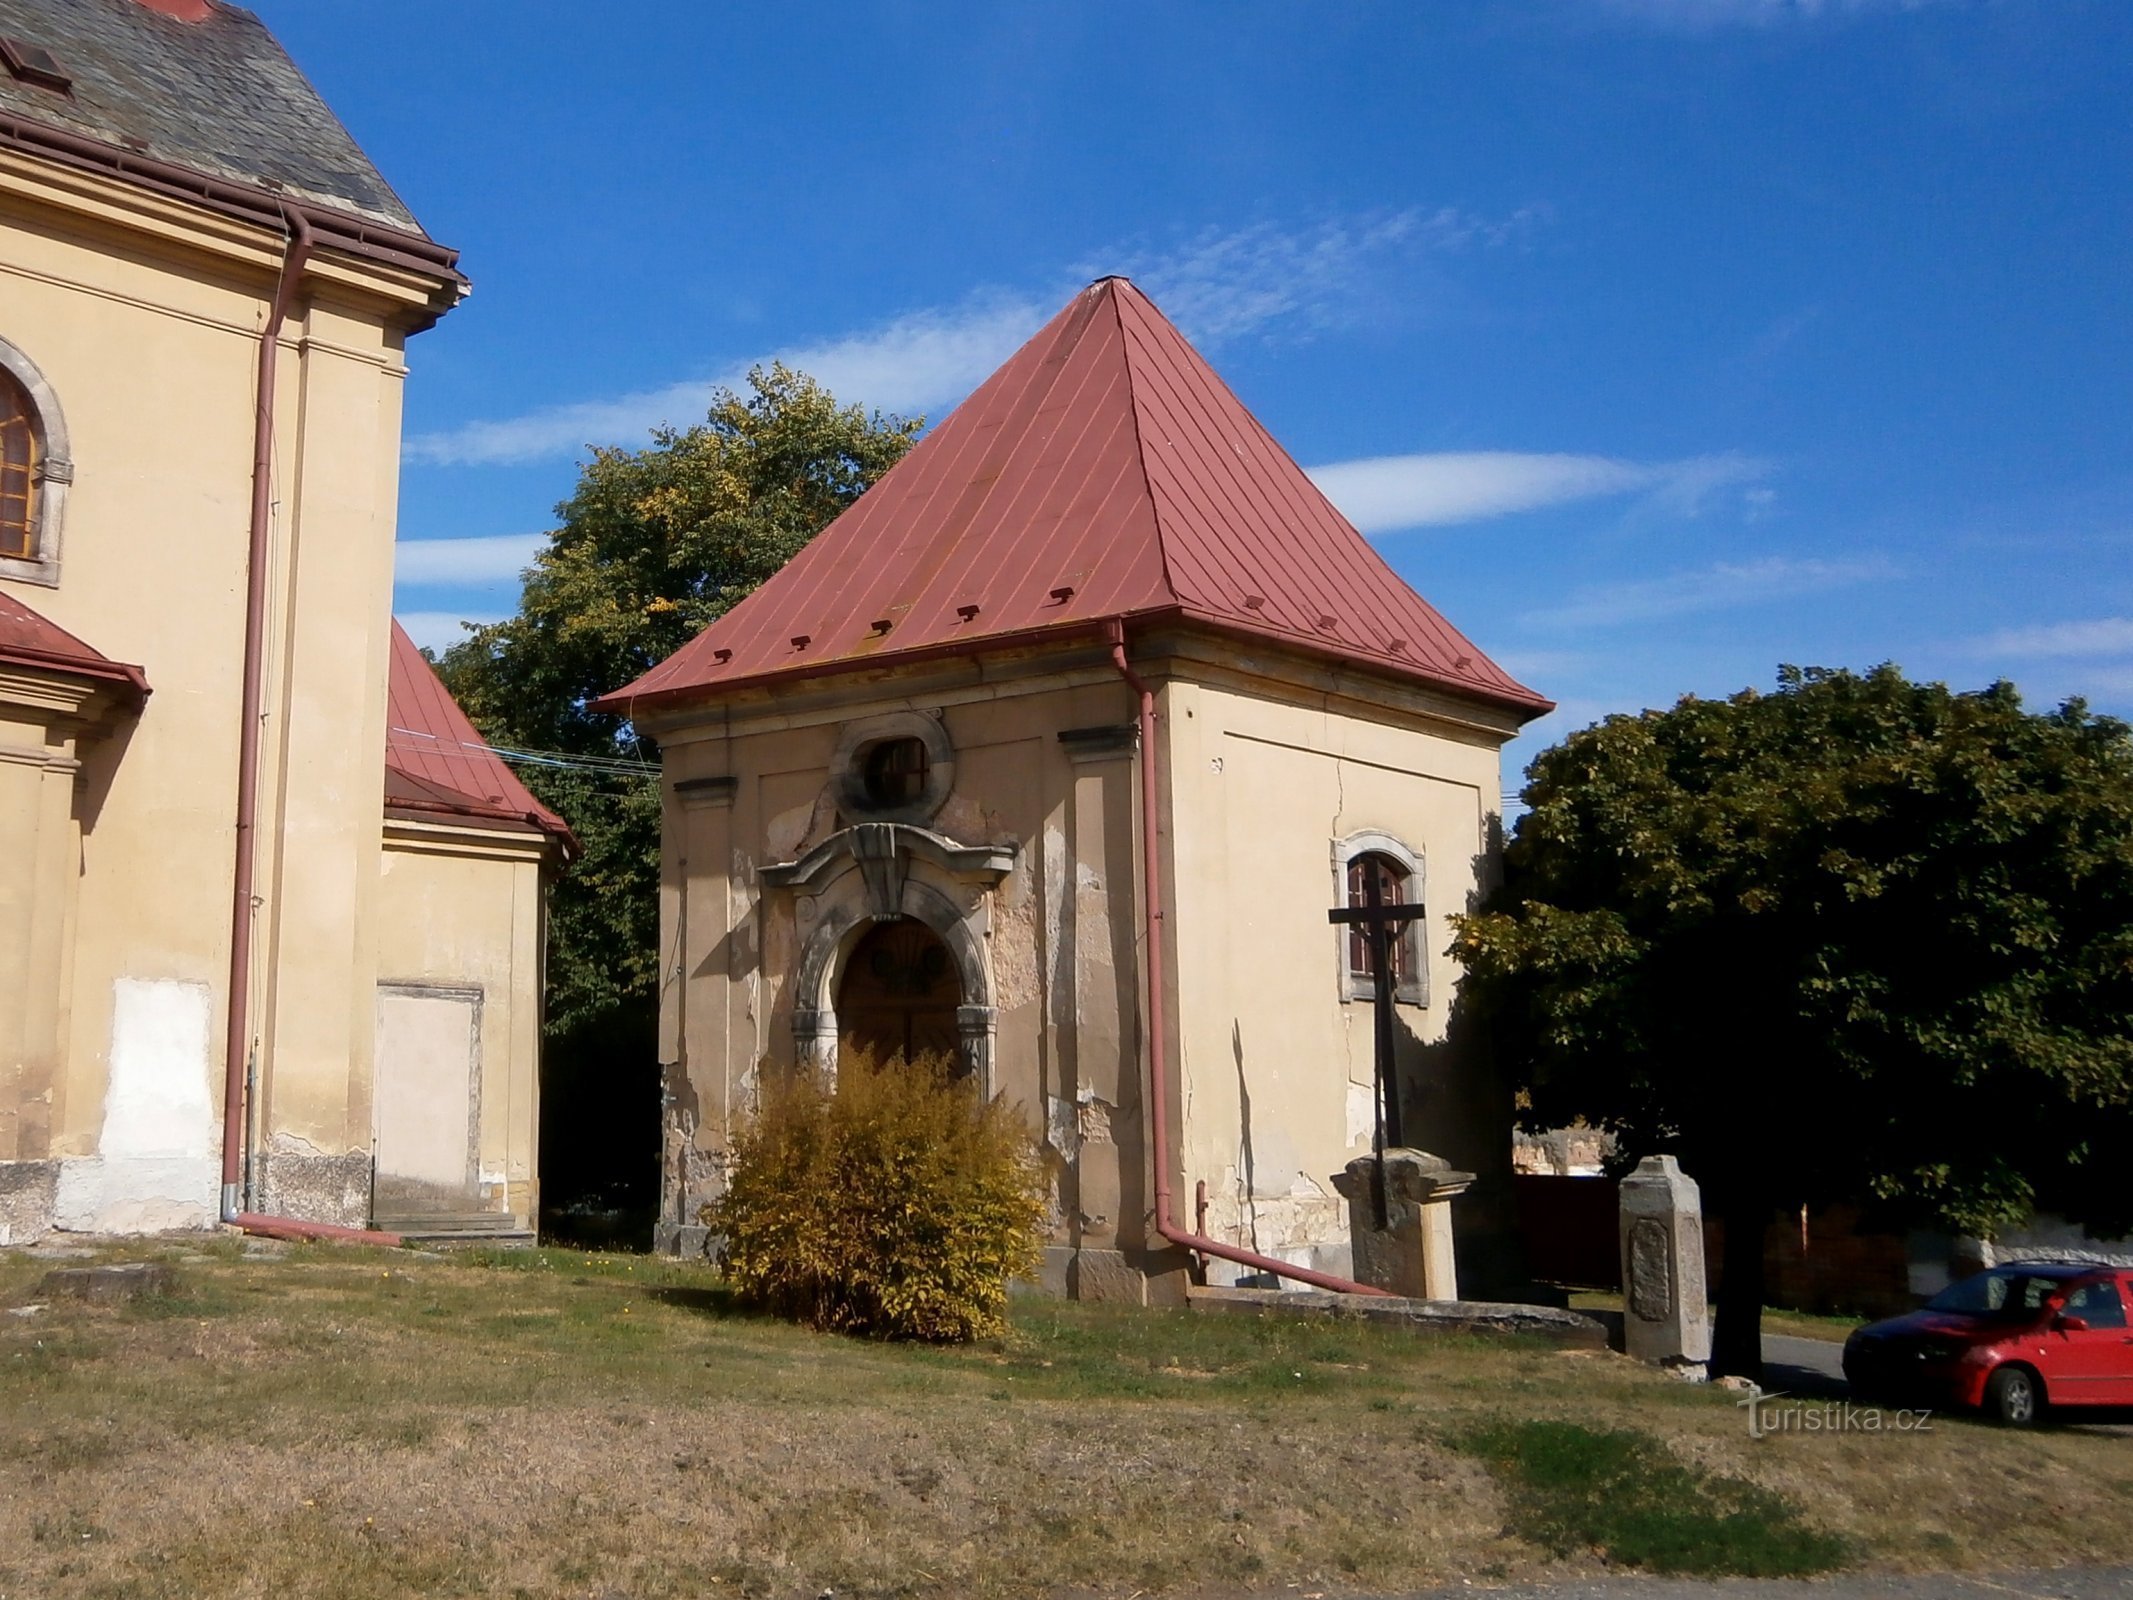 Kapela pri cerkvi sv. Jiljí, opat (Chvalkovice)